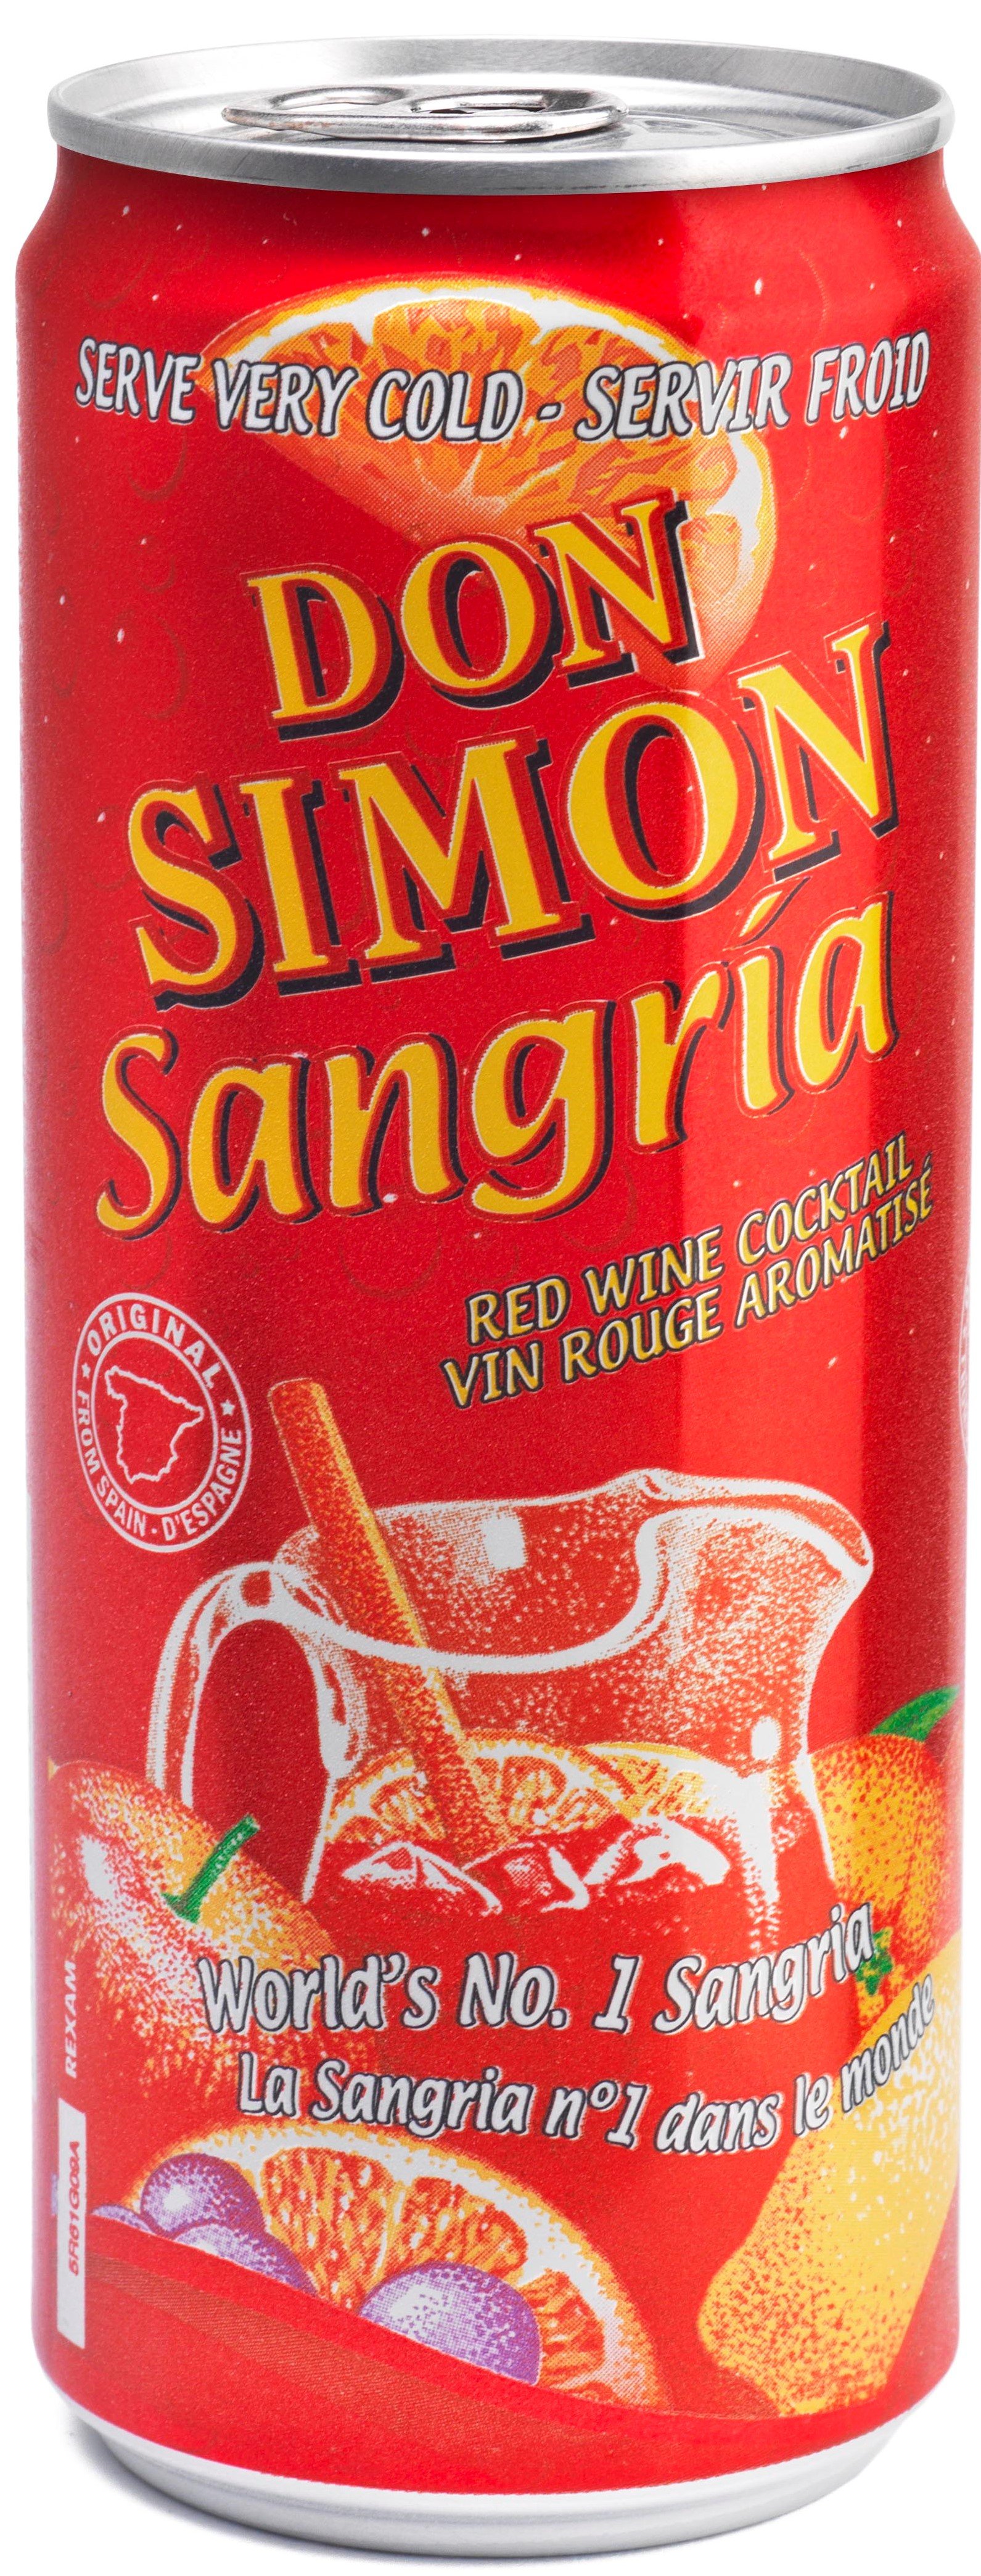 Винный напиток Дон Симон Сангрия напиток виноградосодержащий ароматизированный 0,33л.